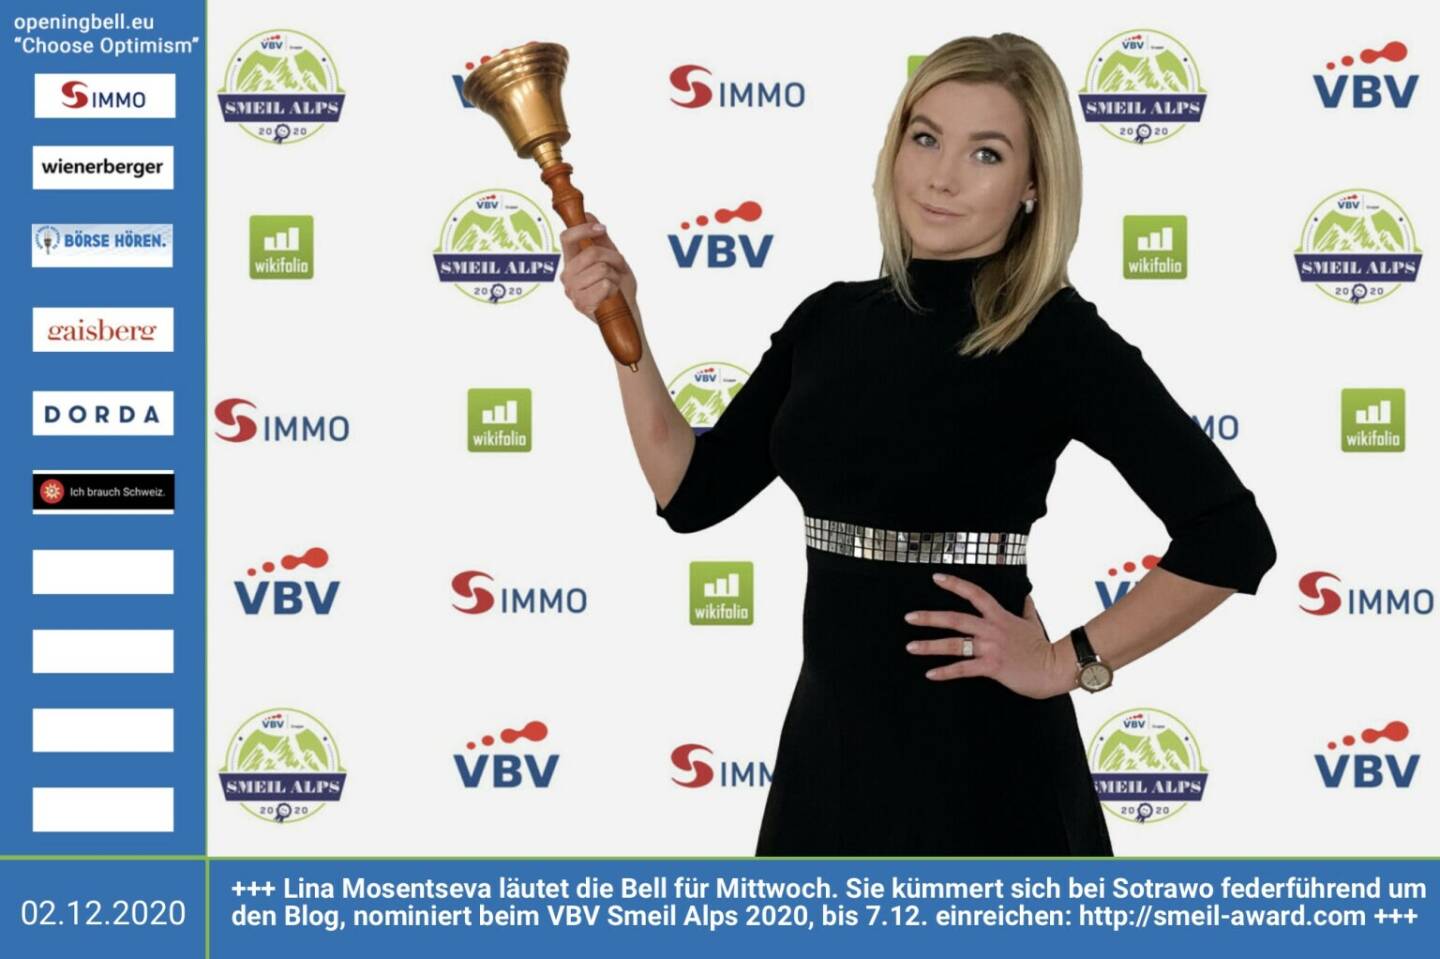 2.12.: Lina Mosentseva läutet die Bell für Mittwoch. Sie kümmert sich bei Sotrawo https://www.sotrawo.com/blog federführend um den Blog, nominiert beim VBV Smeil Alps 2020, bis 7.12. einreichen: http://smeil-award.com http://www.vbv.at - Mehr Choose Optimism: https://boerse-social.com/category/choose_optimism  https://www.facebook.com/chooseoptimism/